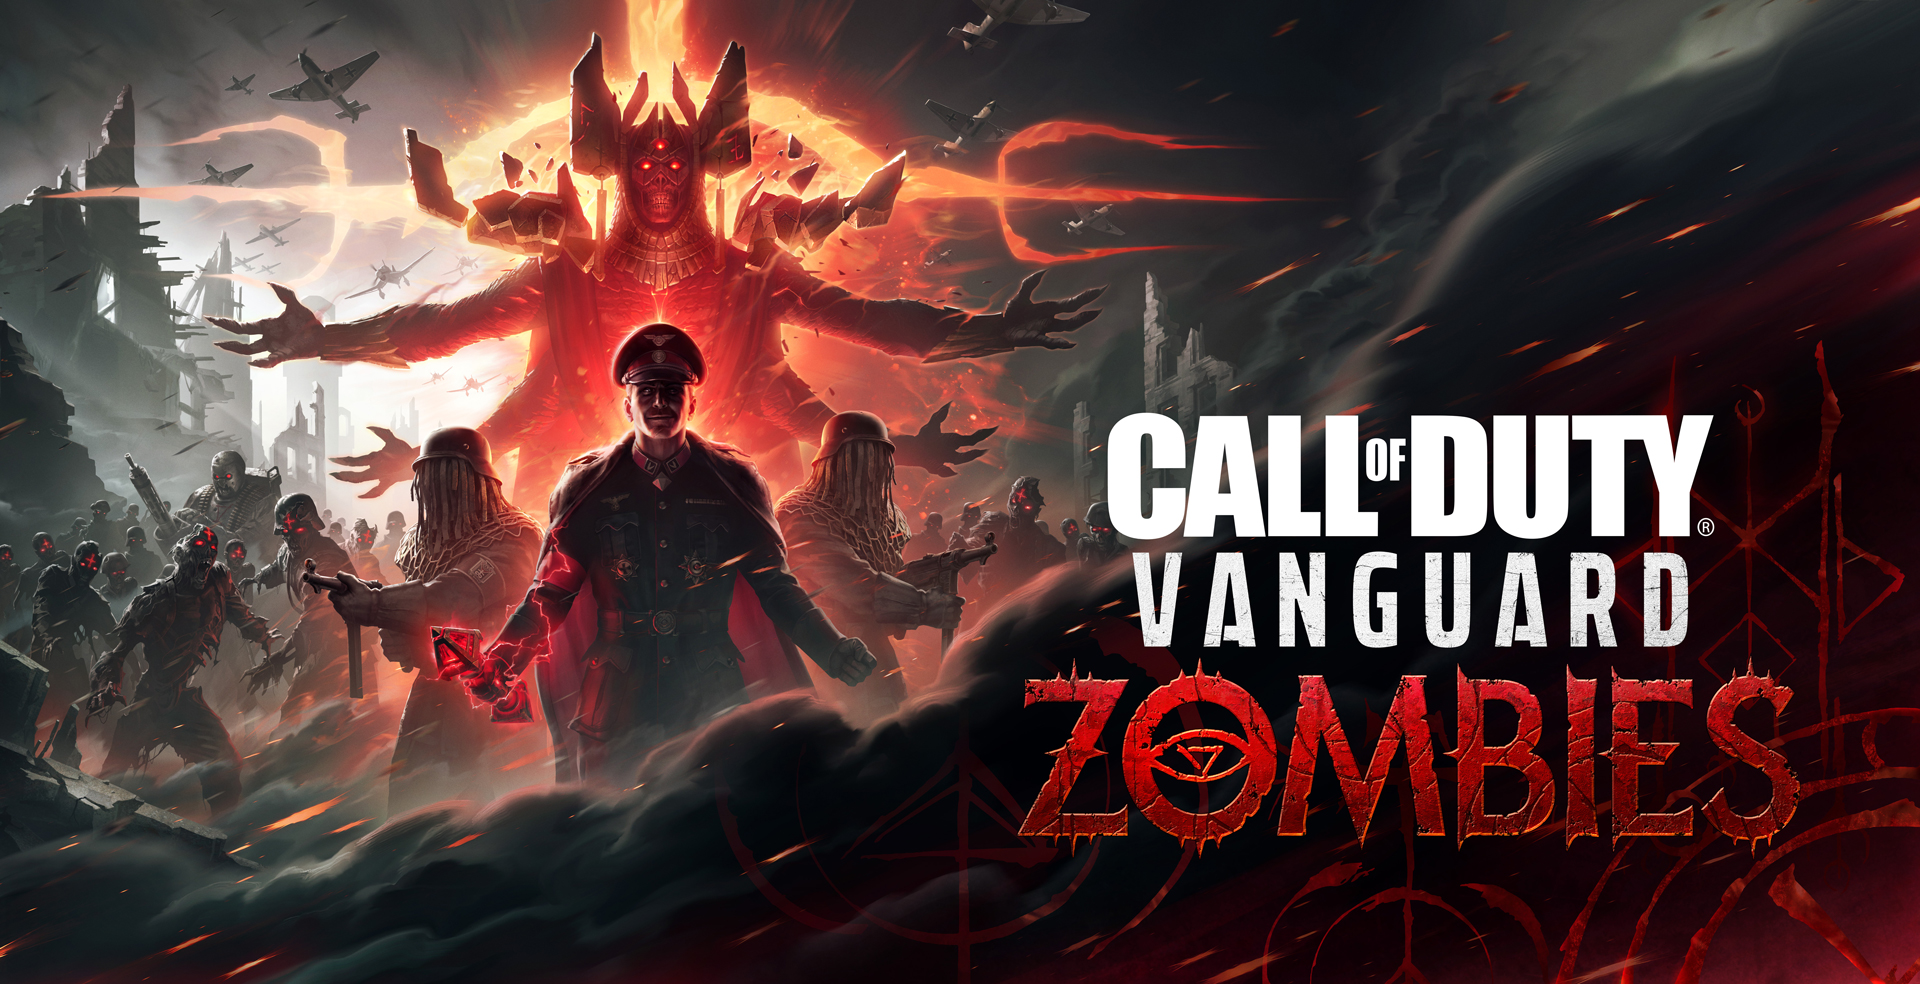 El tráiler de Call of Duty: Vanguard Zombies fue revelado después de una filtración.